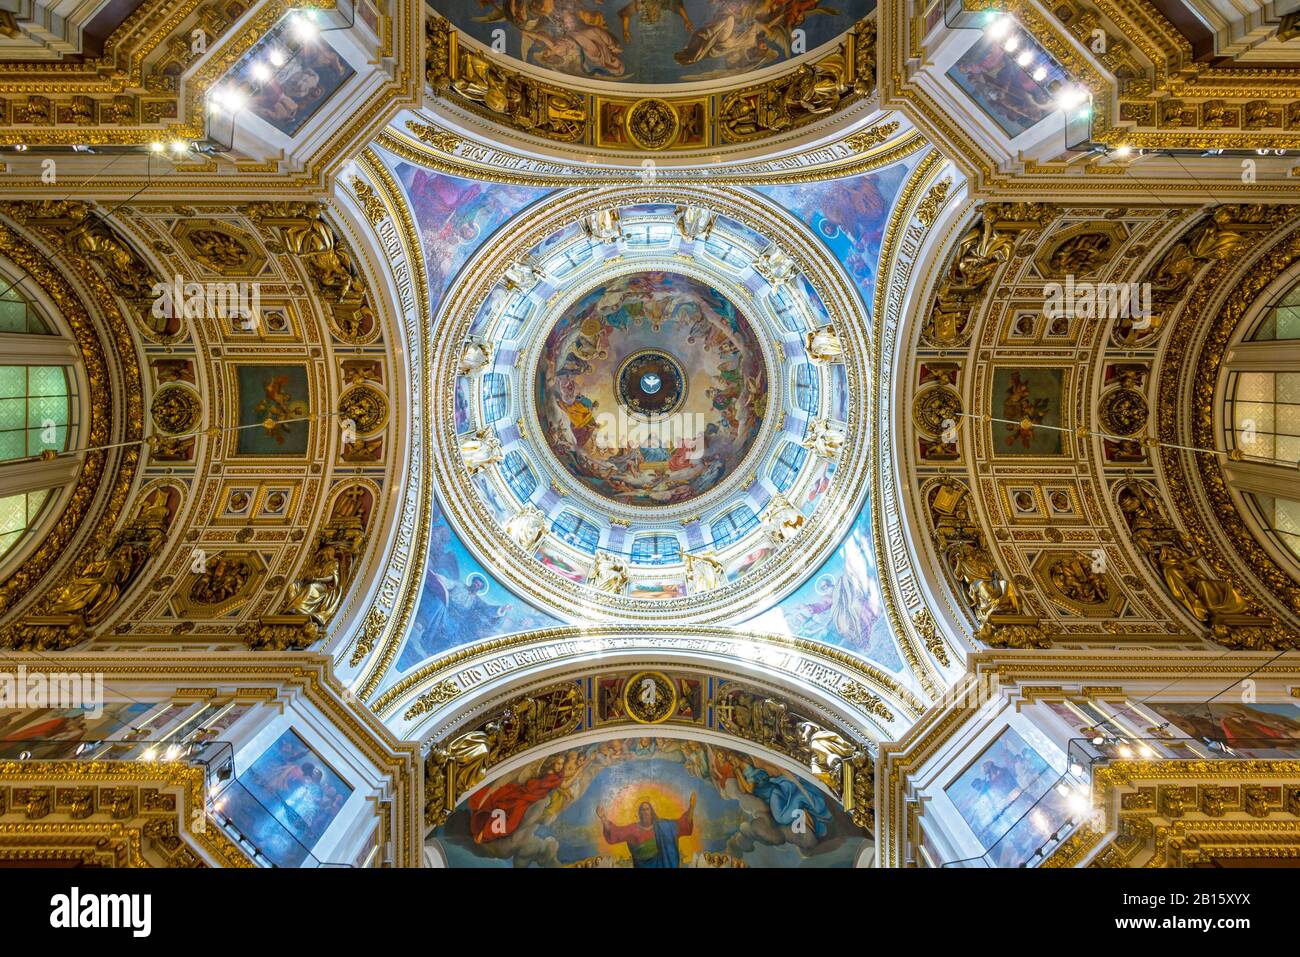 Innenansicht der Kathedrale von Sankt Isaac in Sankt Petersburg, Russland. Decke und Kuppel. Stockfoto